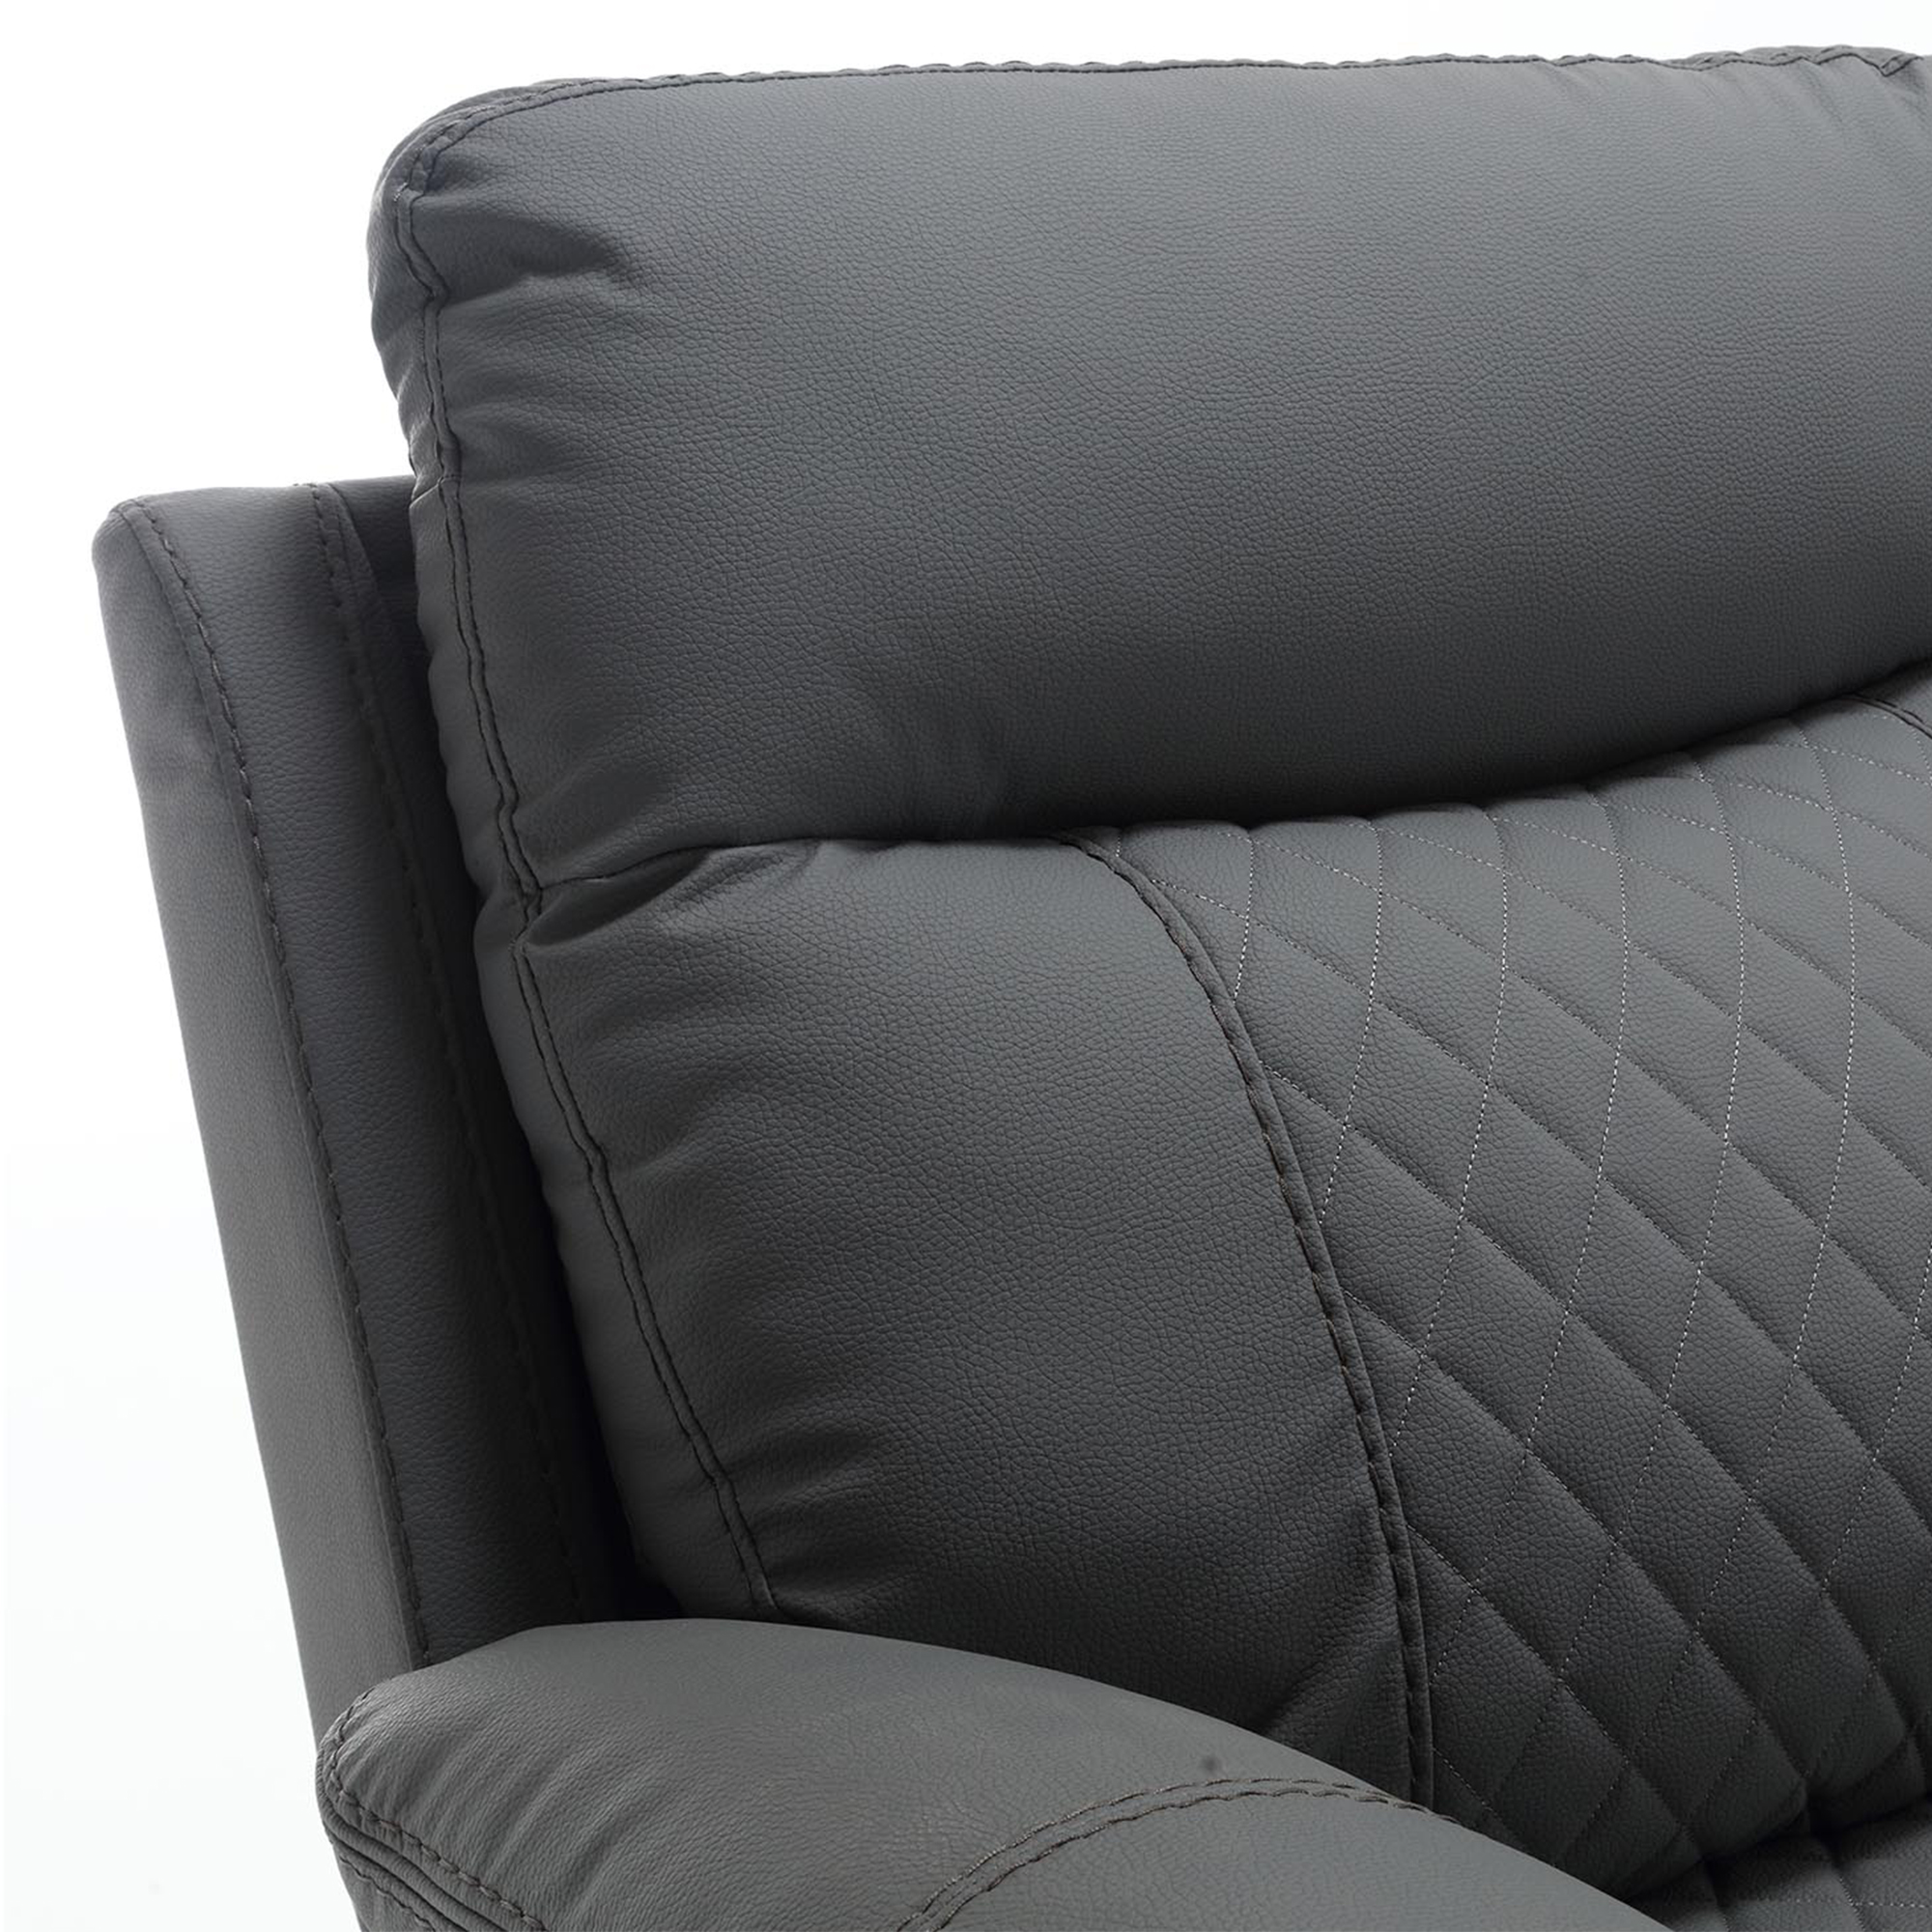 Canapé 3 places relax électrique en simili cuir gris foncé